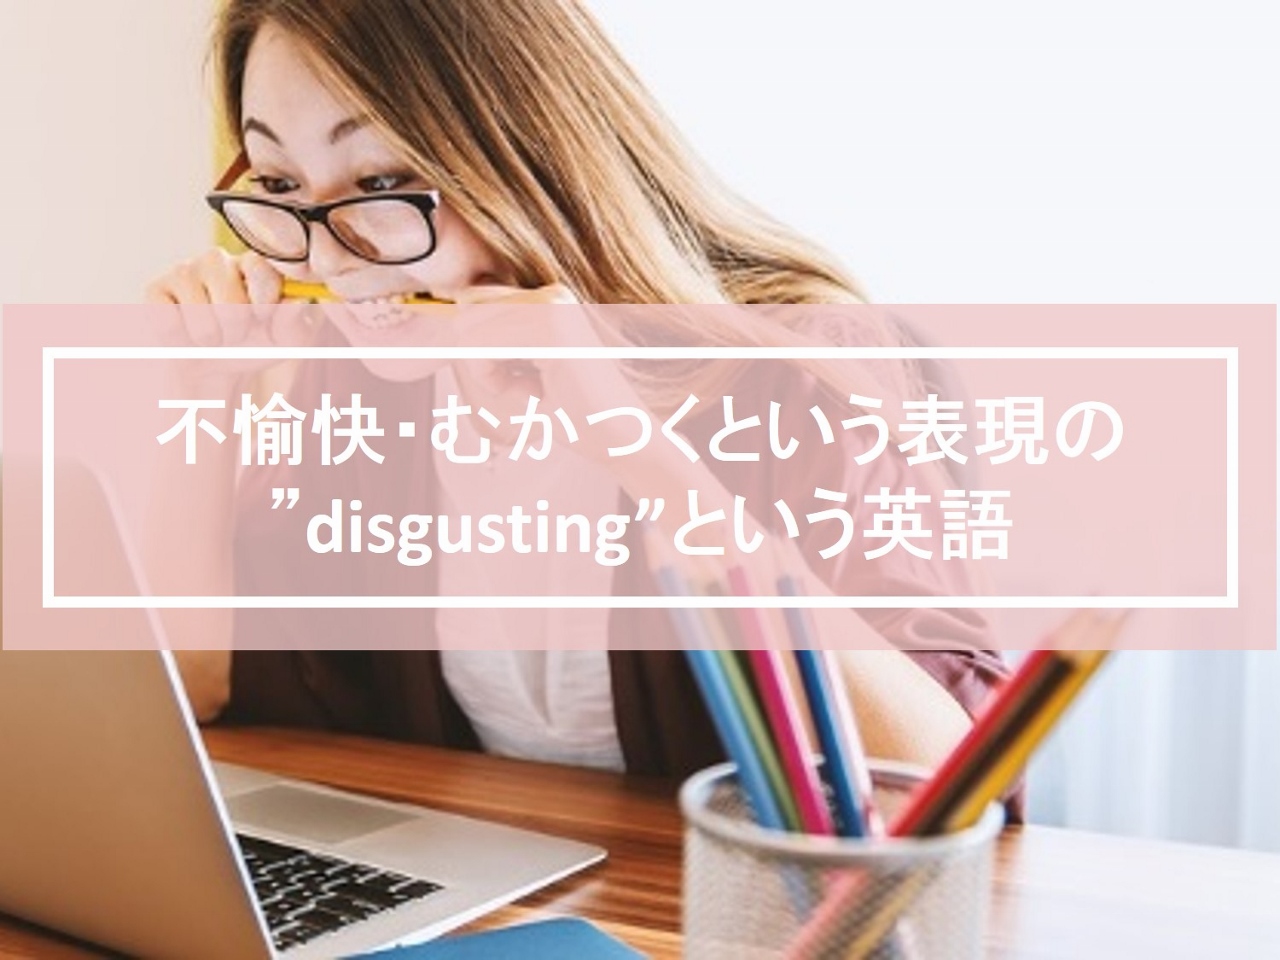 不愉快・むかつくという表現の”disgusting”という単語